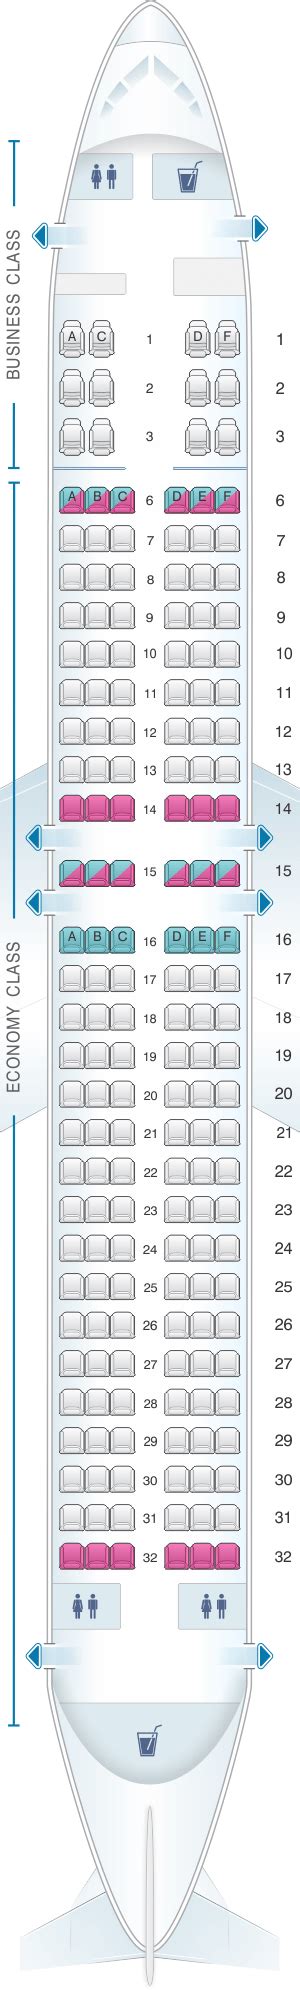 Boeing 737 800 Seating Plan Flydubai